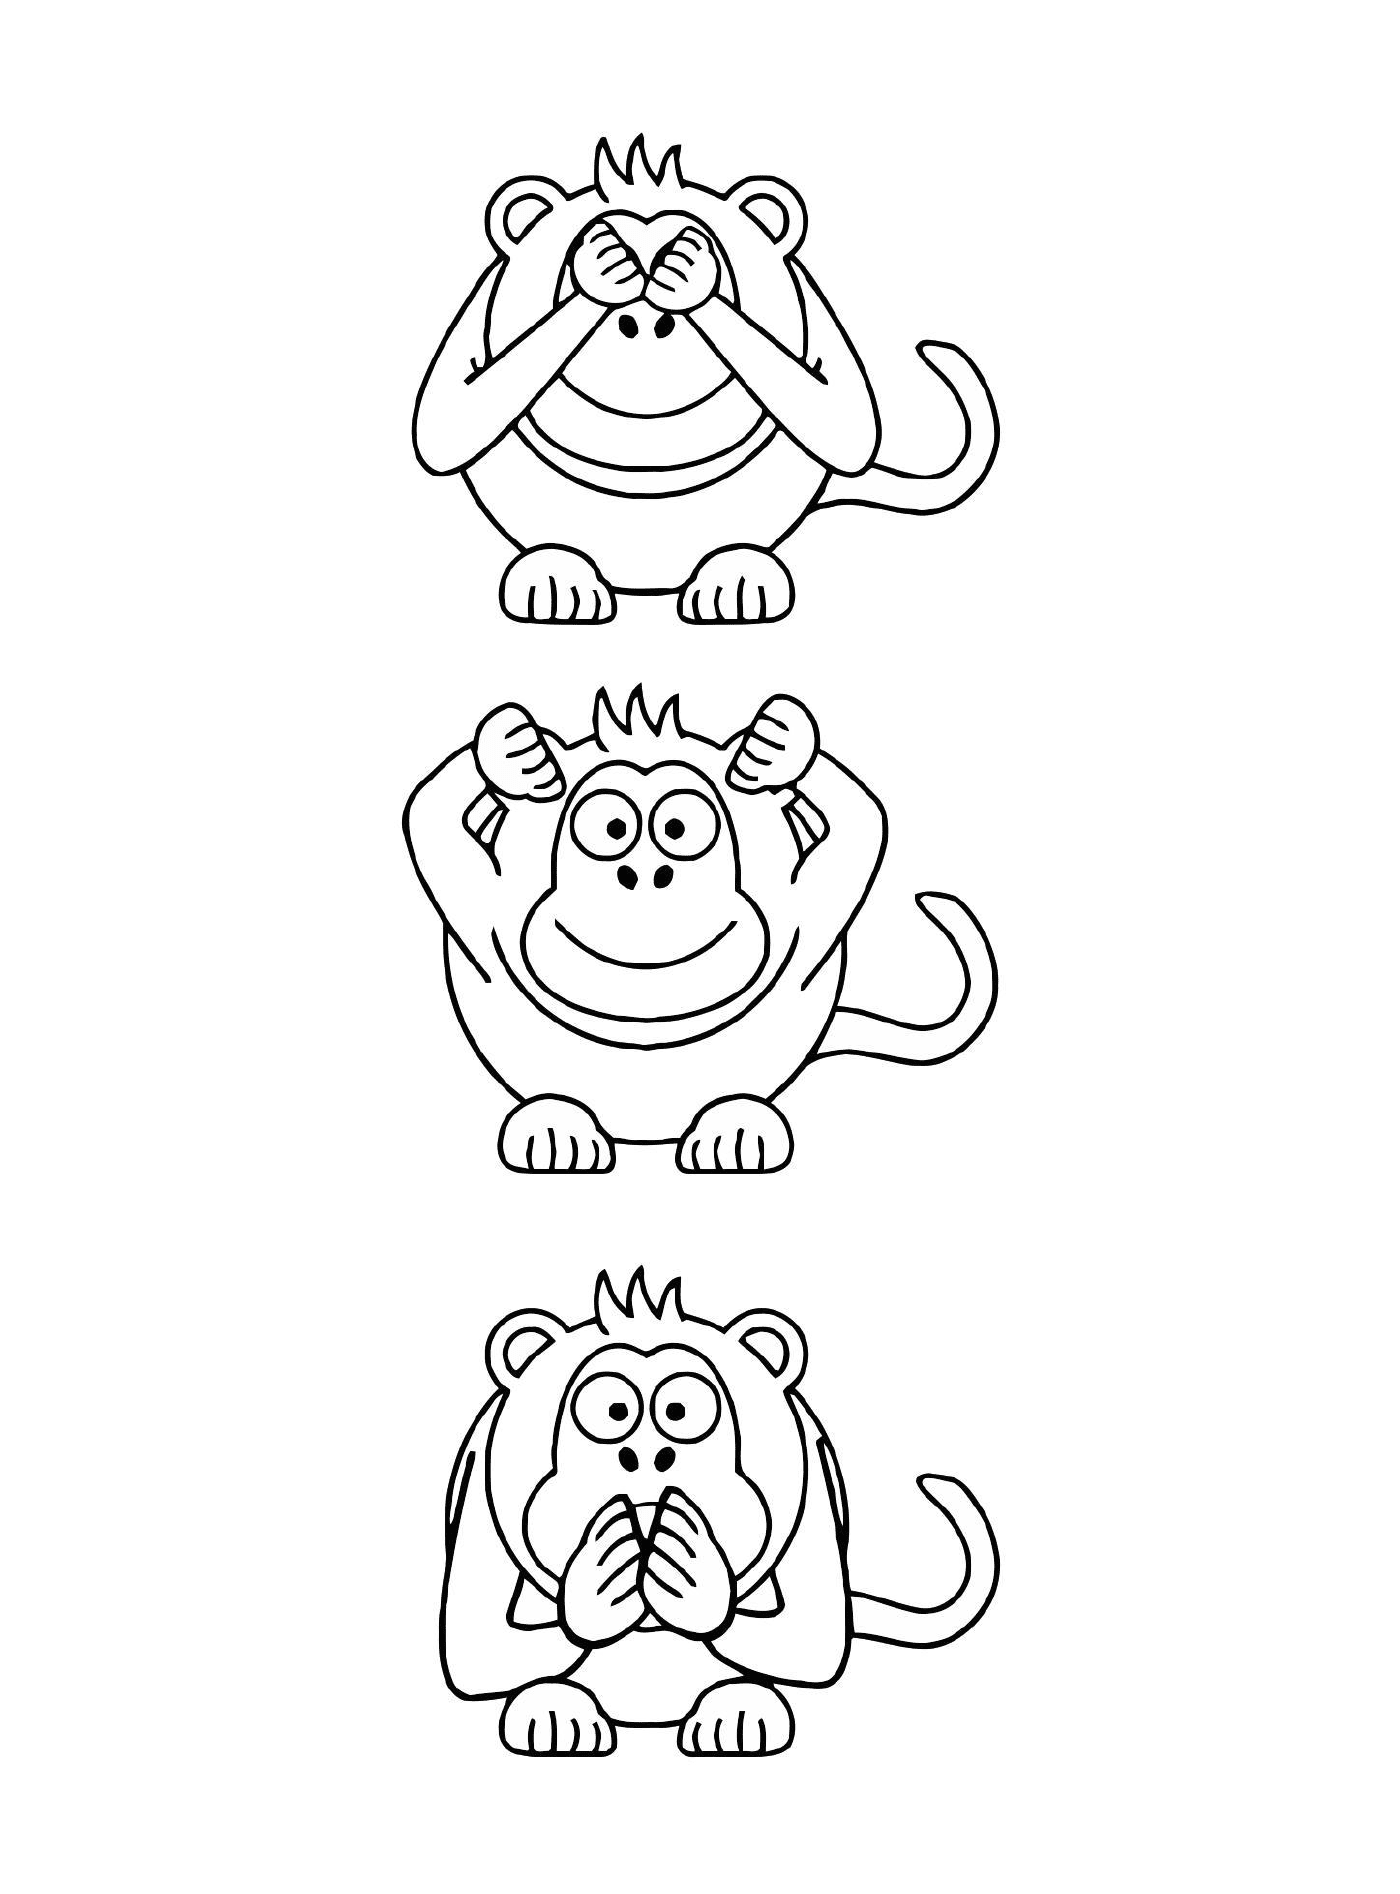  तीन बंदर अलग - अलग अभिव्यक्‍तियों के साथ 